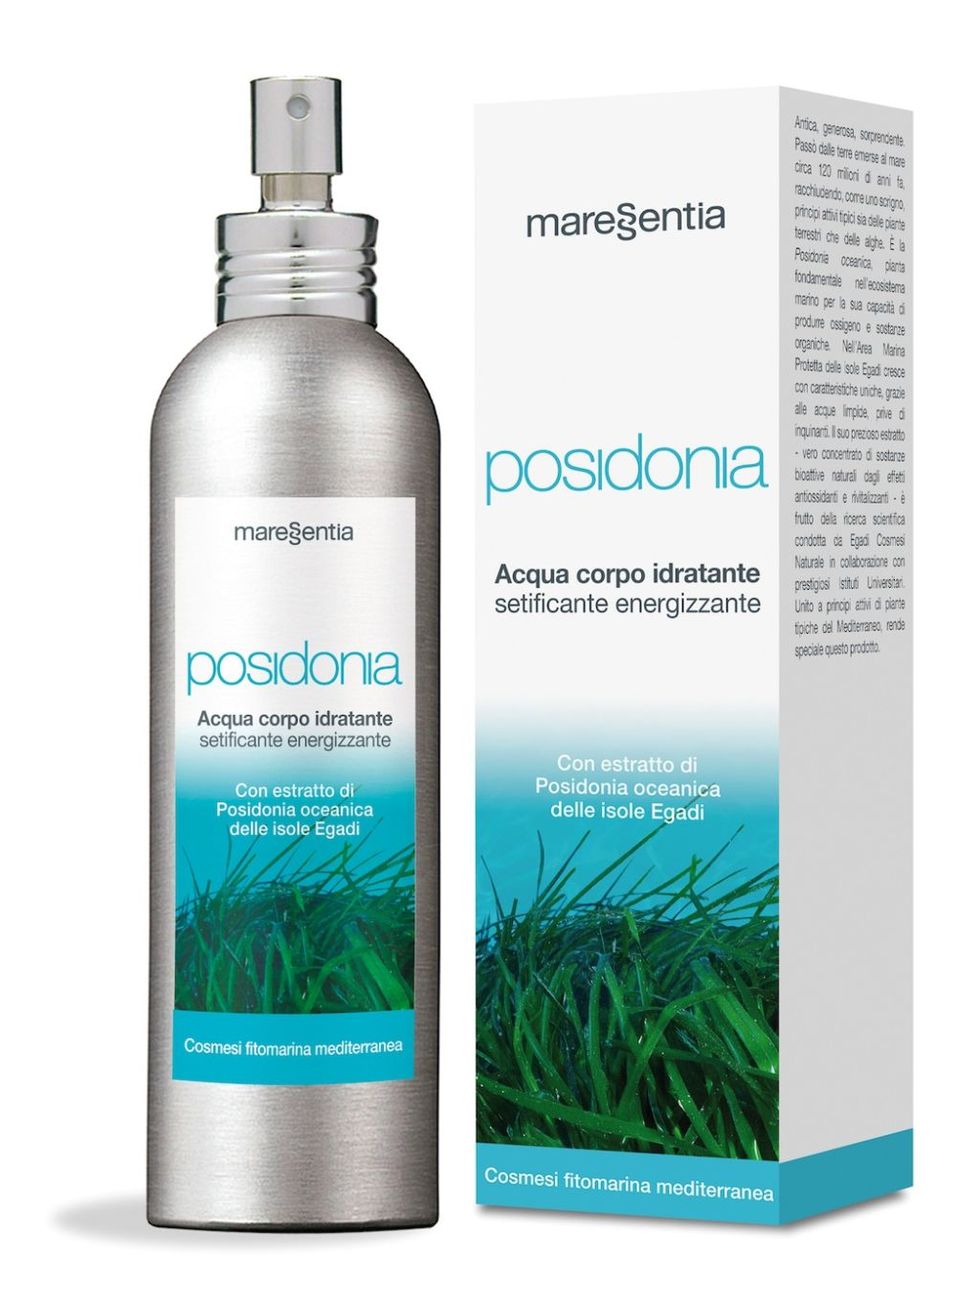 <p>L'Acqua Corpo Idratante Posidonia di Maressentia, contiene l'estratto di Posidonia Oceanica delle Isole Egadi (antiossidante, rigenerante, anti-età, anti-macchia), acido jaluronico (idratante), estratto d'aloe (lenitivo e protettivo). Si vaporizza sul corpo e si massaggia delicatamente per favorire l'assorbimento (30 euro).</p>